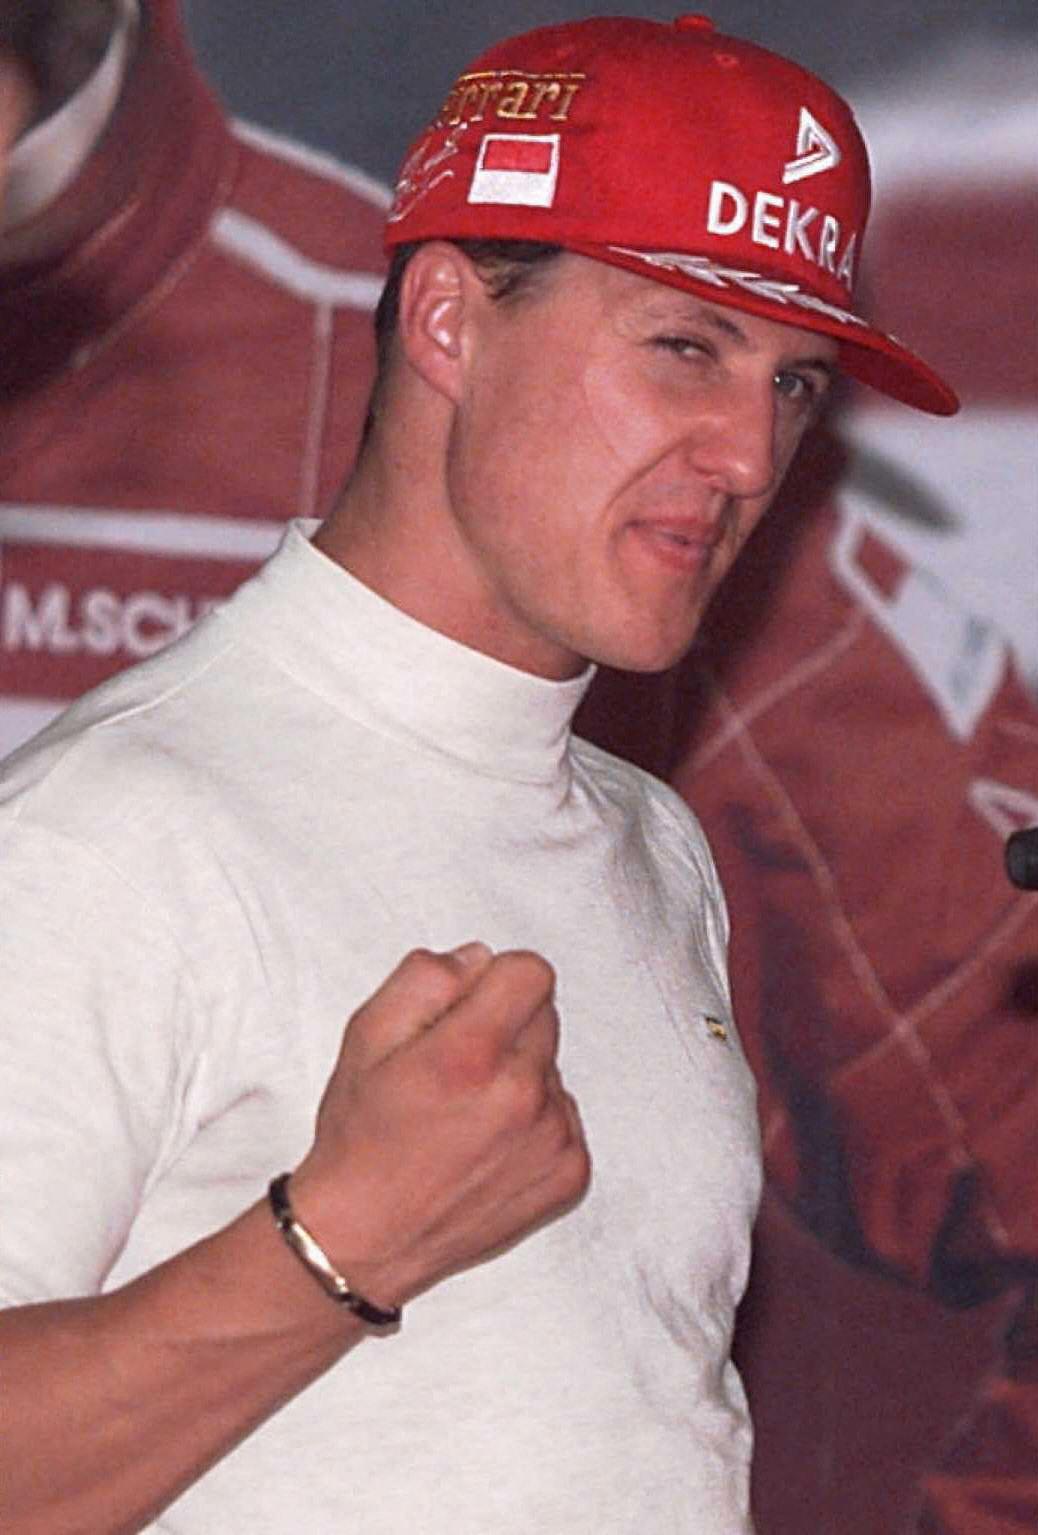 Nemecký pilot F1 Michael Schumacher.